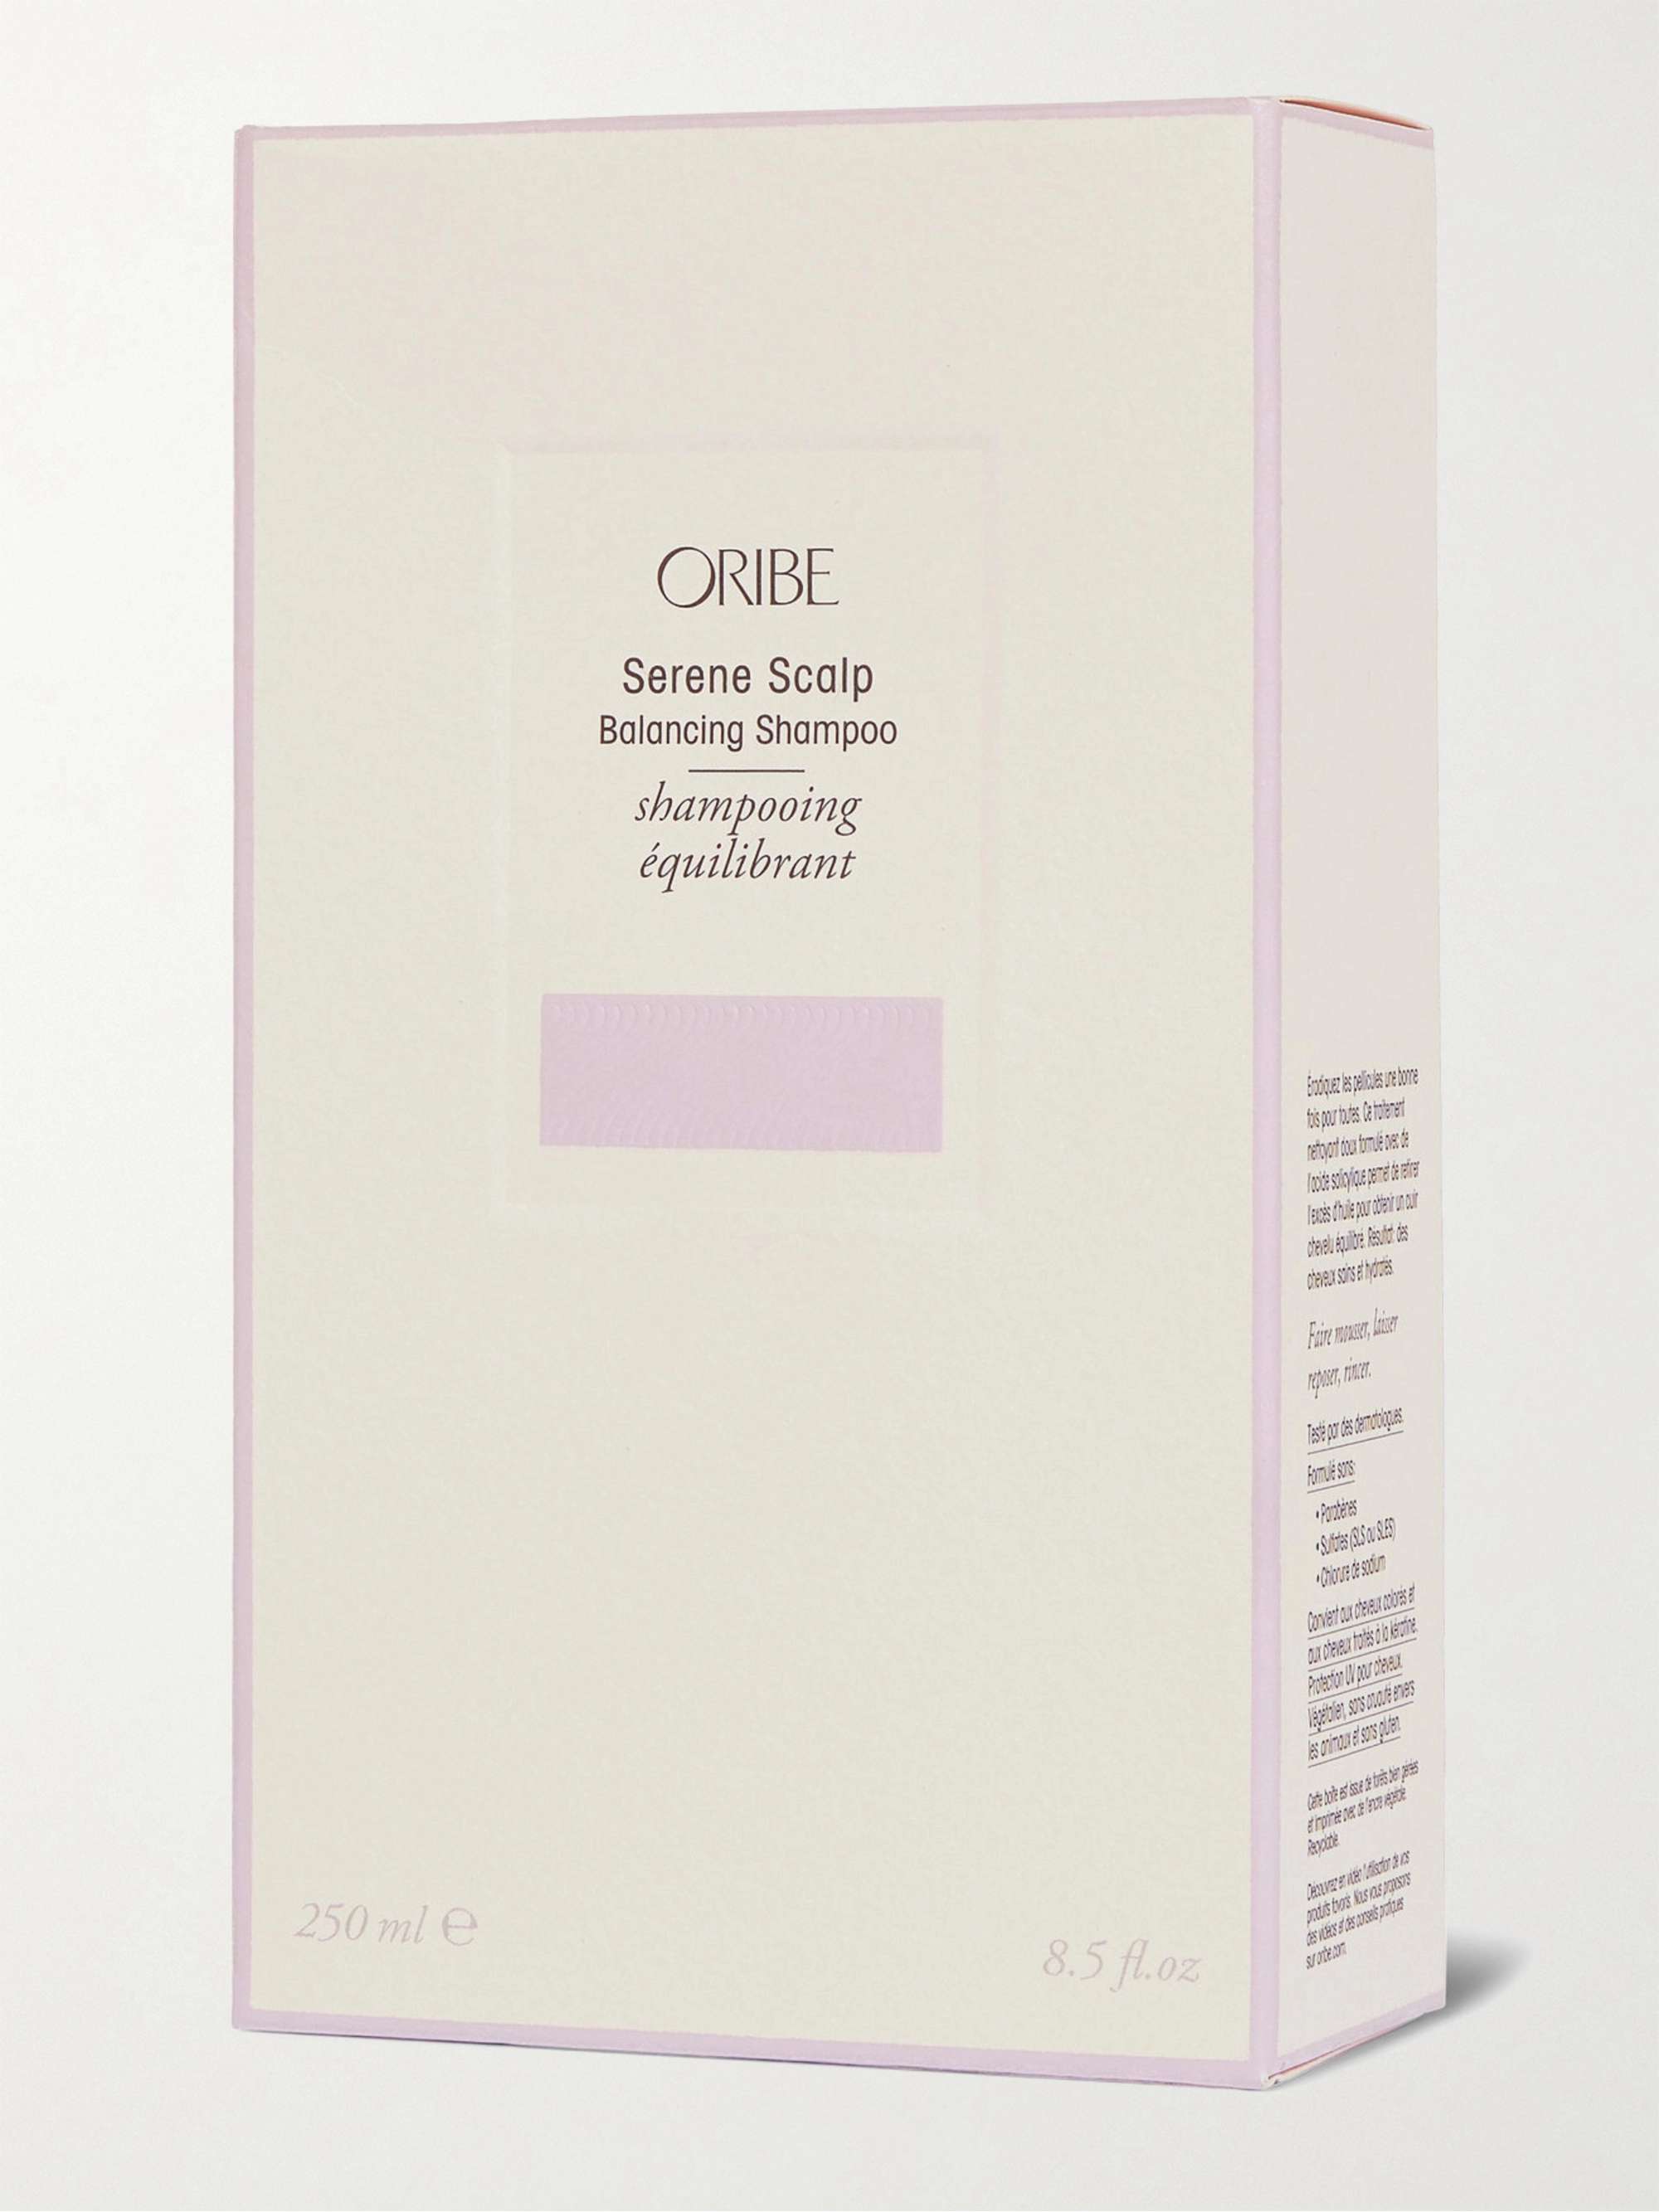 ORIBE Serene Scalp Balancing Shampoo, 250ml